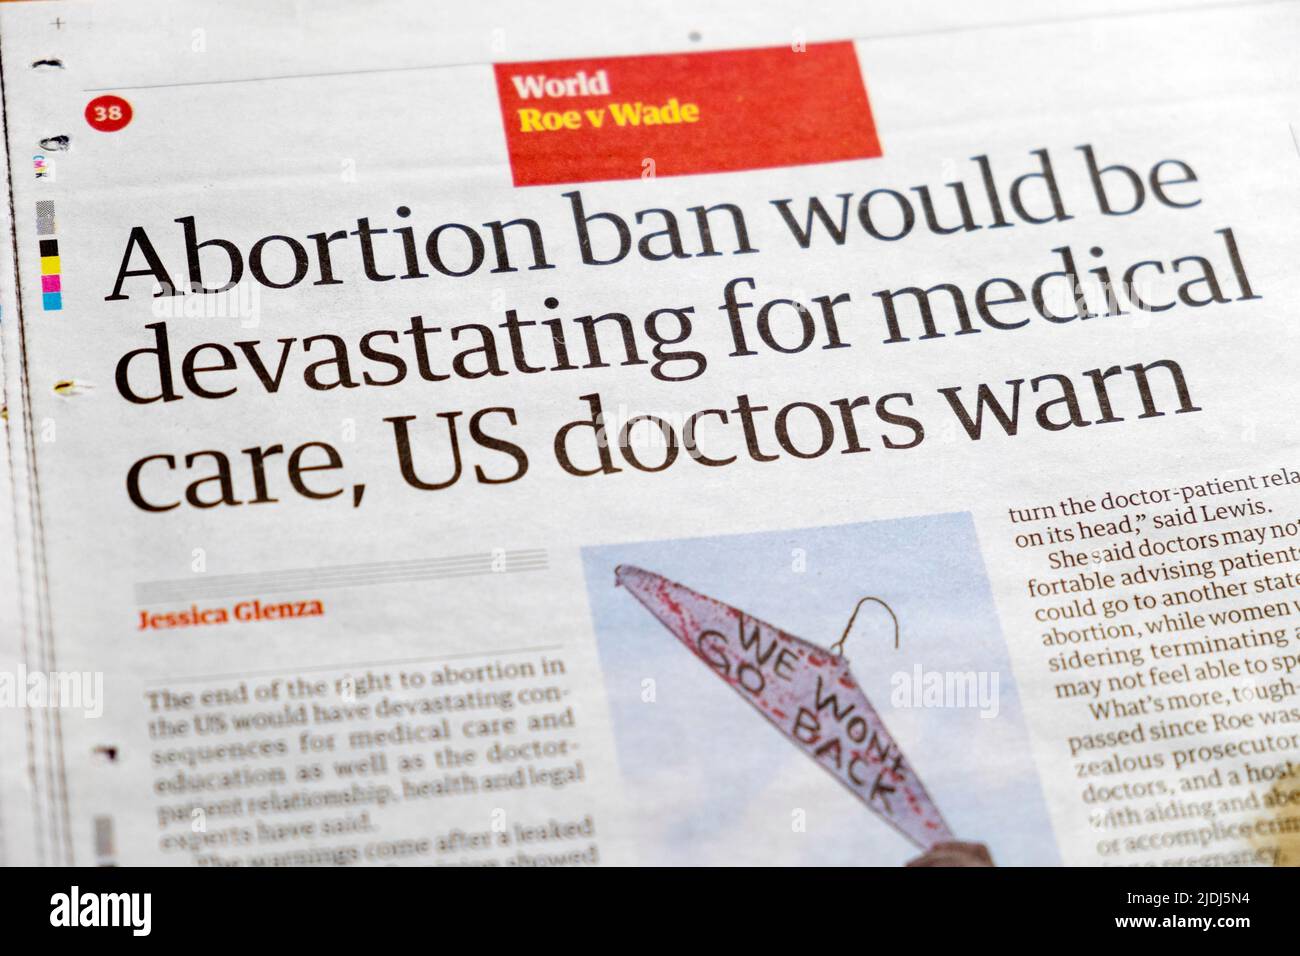 Roe v Wade 'La prohibición del aborto sería devastadora para la atención médica, los médicos estadounidenses advierten' Guardian British periódico artículo titular 6 mayo 2022 Londres Reino Unido Foto de stock